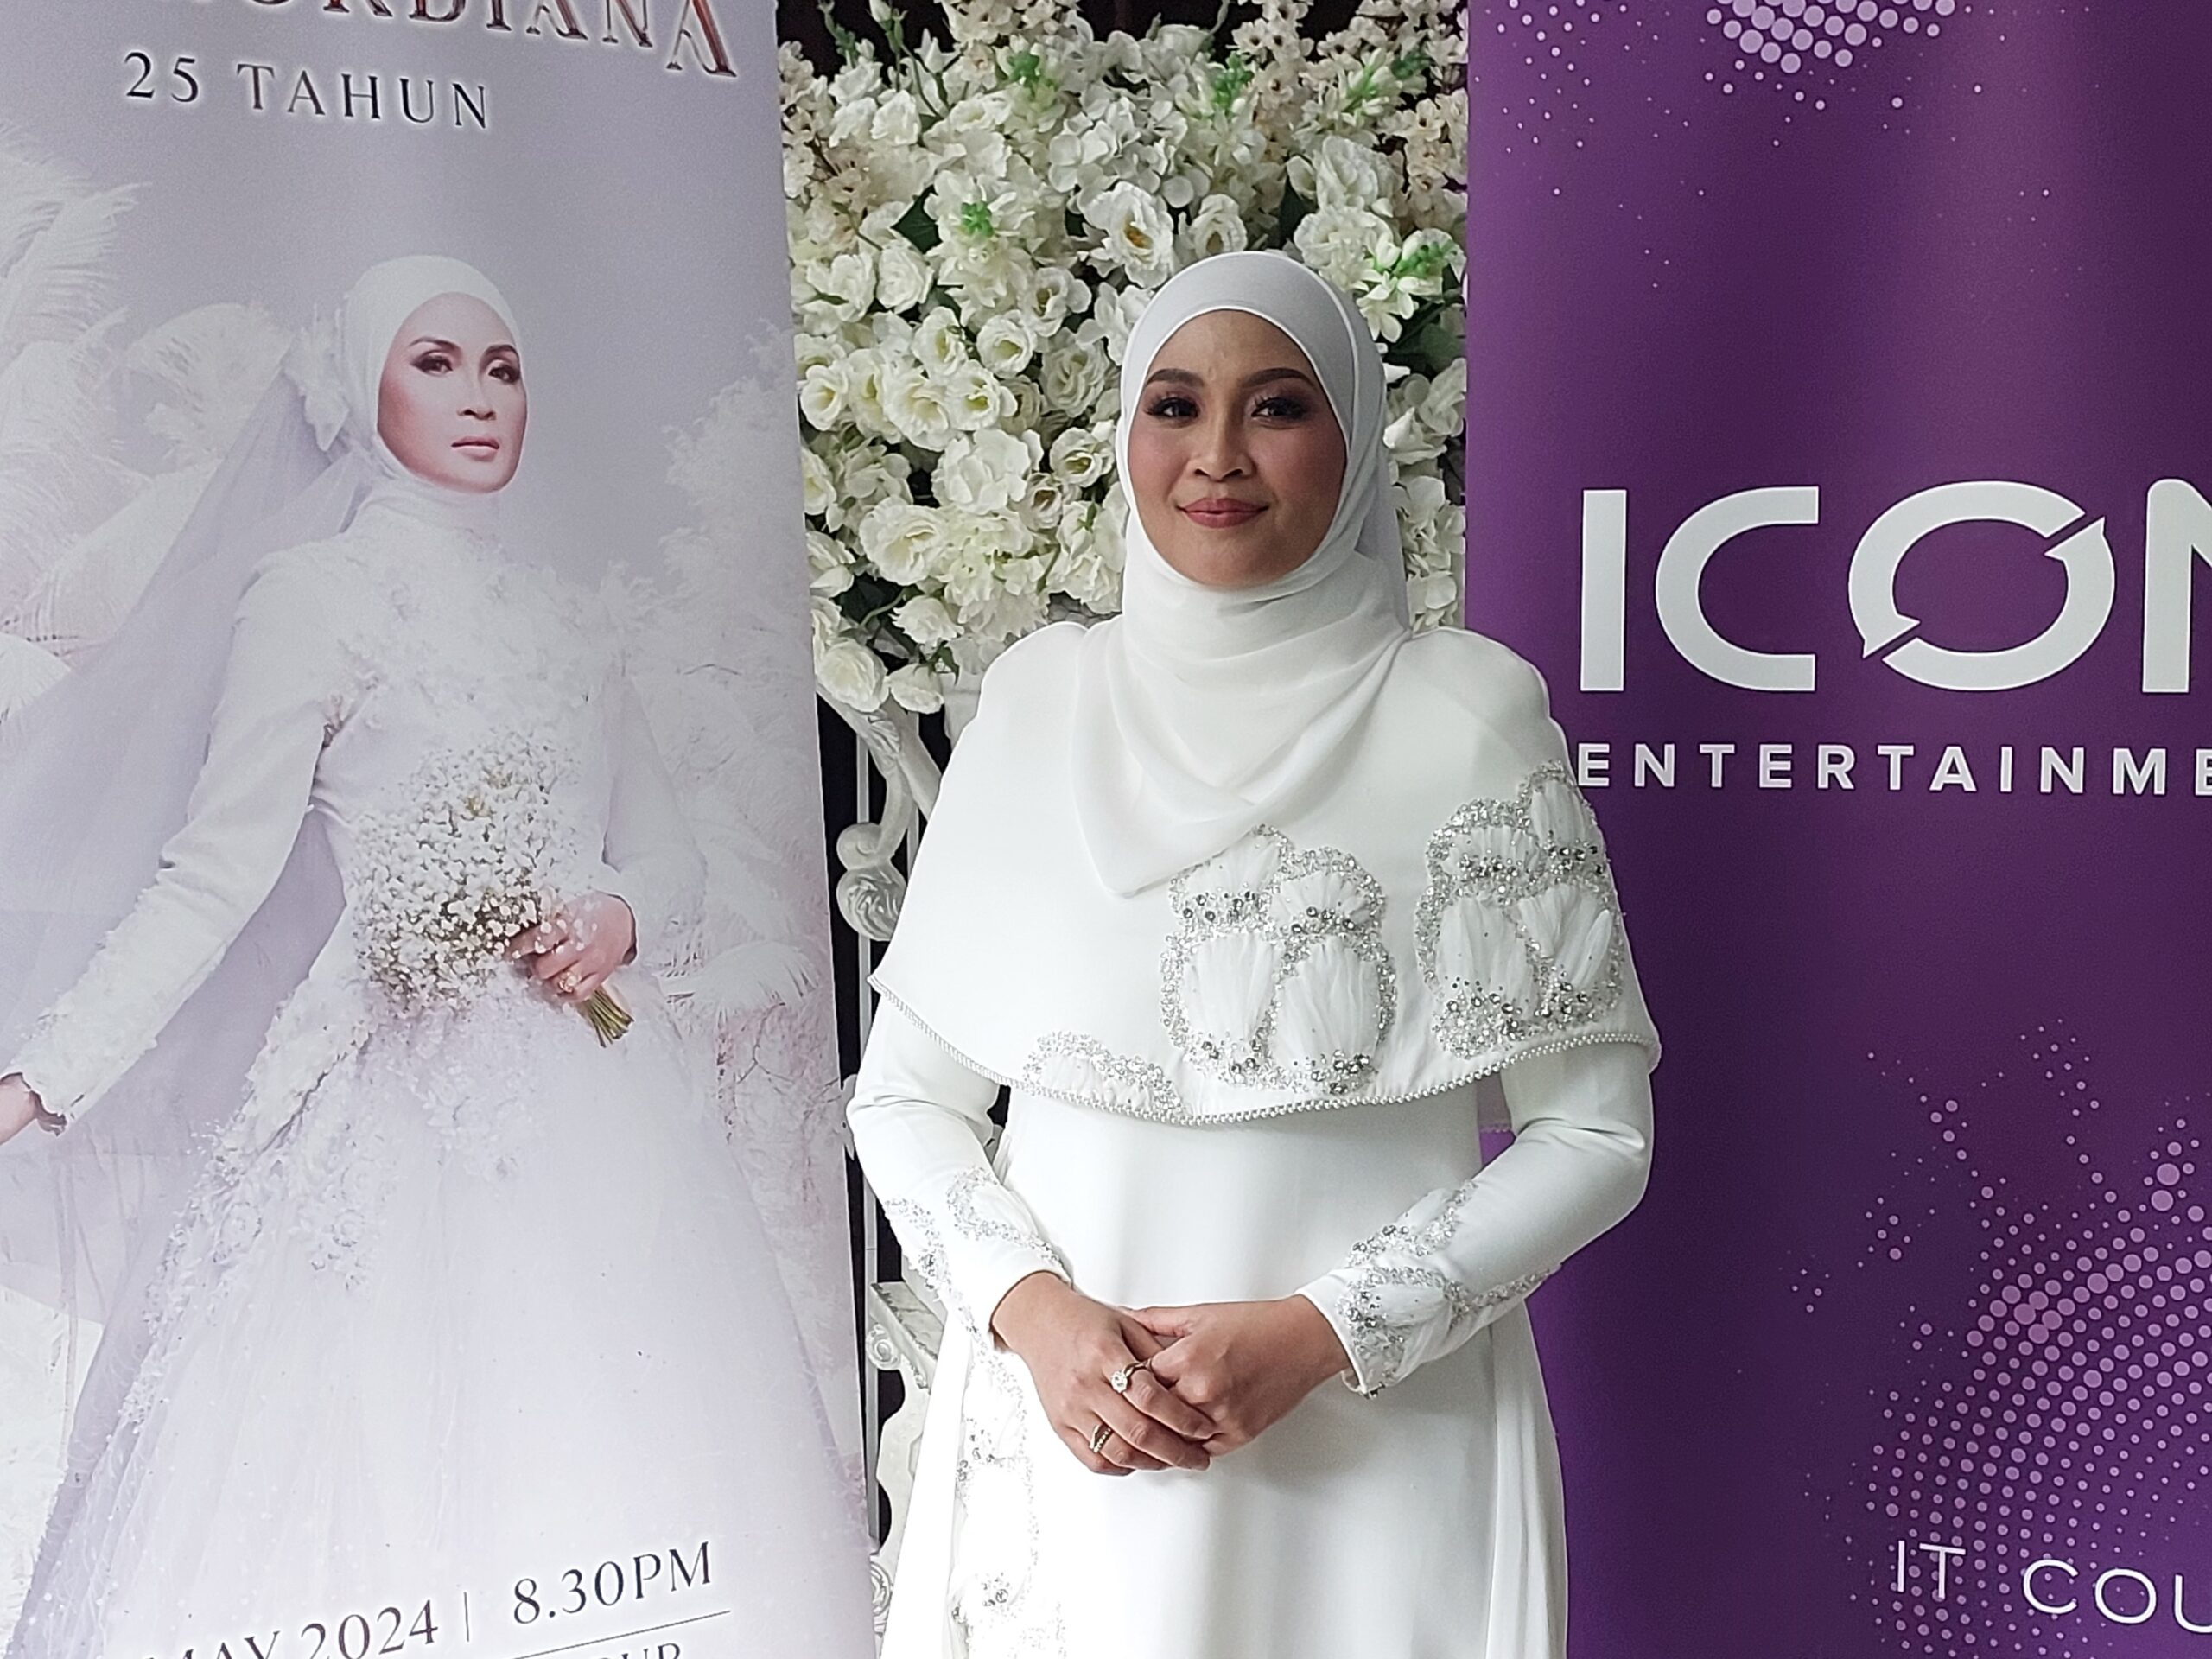 Bukan nak kahwin, tetapi Siti Nordiana bakal adakan konsert solo Mei ini